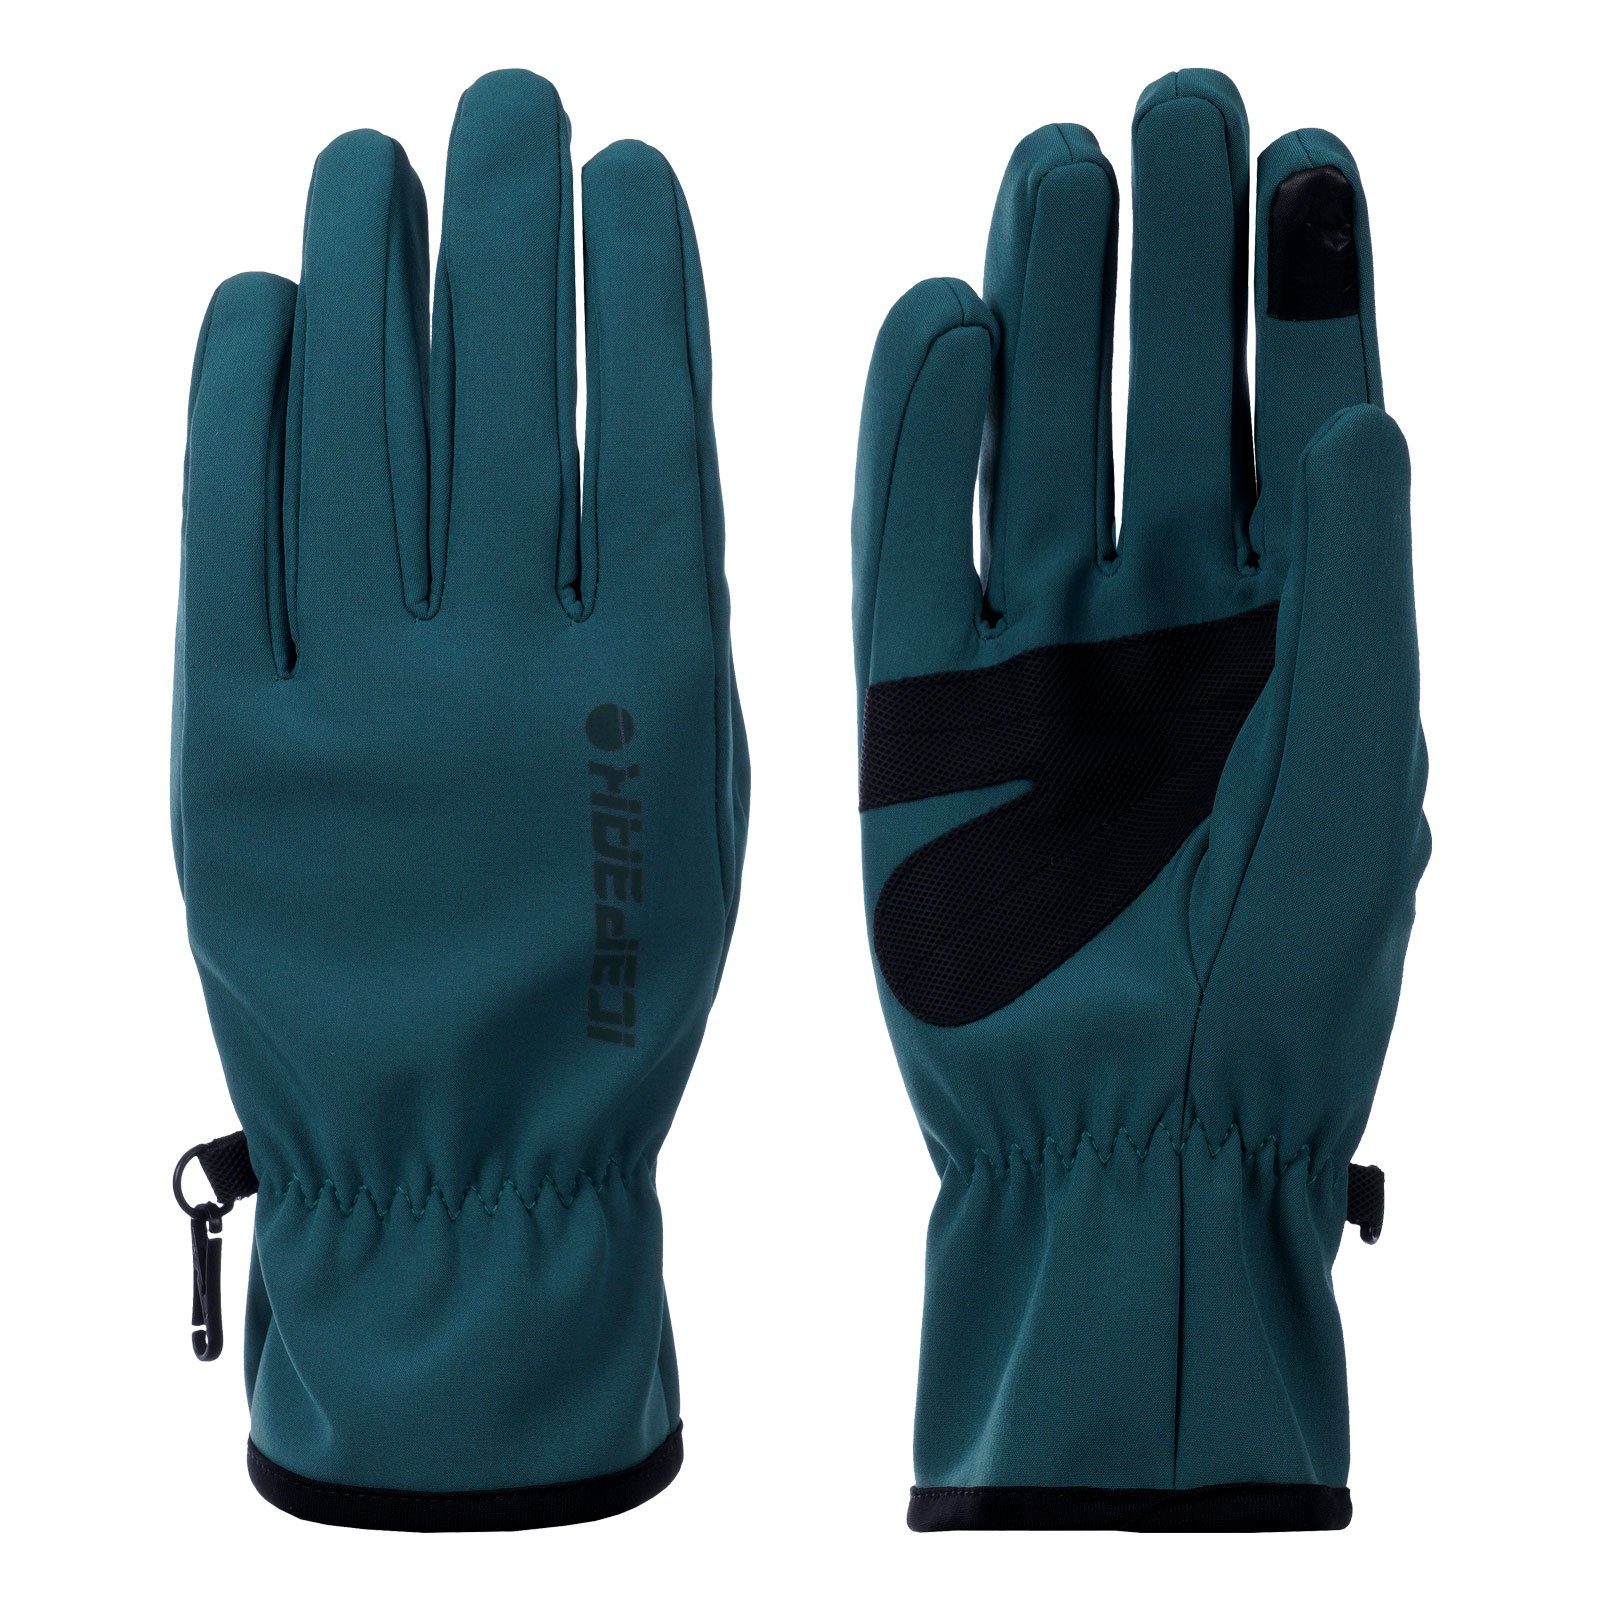 Eigenschaften Gloves funktionellen mit Multisporthandschuhe Icepeak vielen Hustonville 530 Functional Multisport emerald